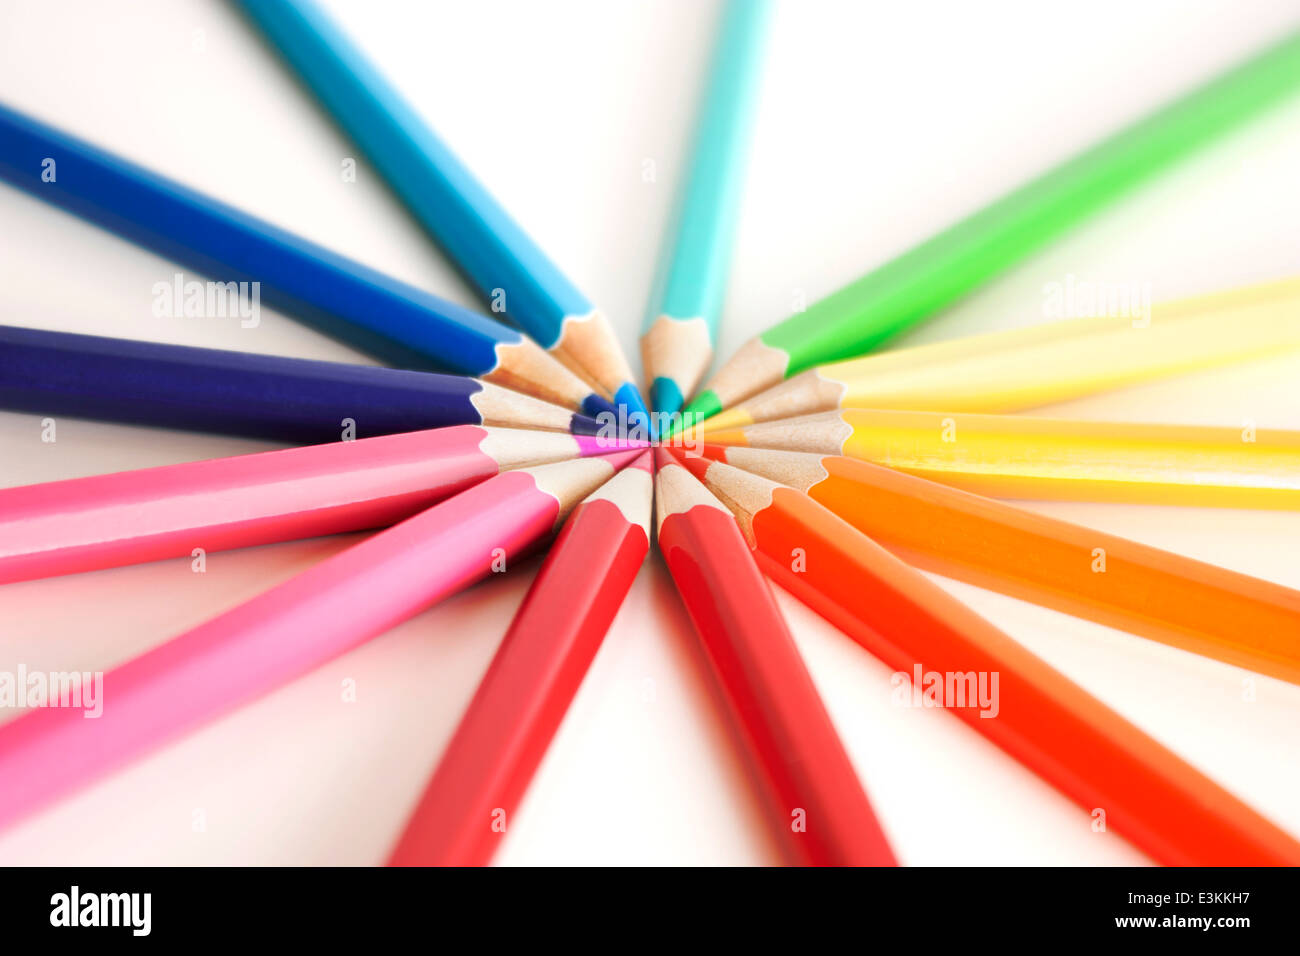 Rainbow ruota colori fatta di matite colorate. Su uno sfondo bianco con soft focus. Foto Stock